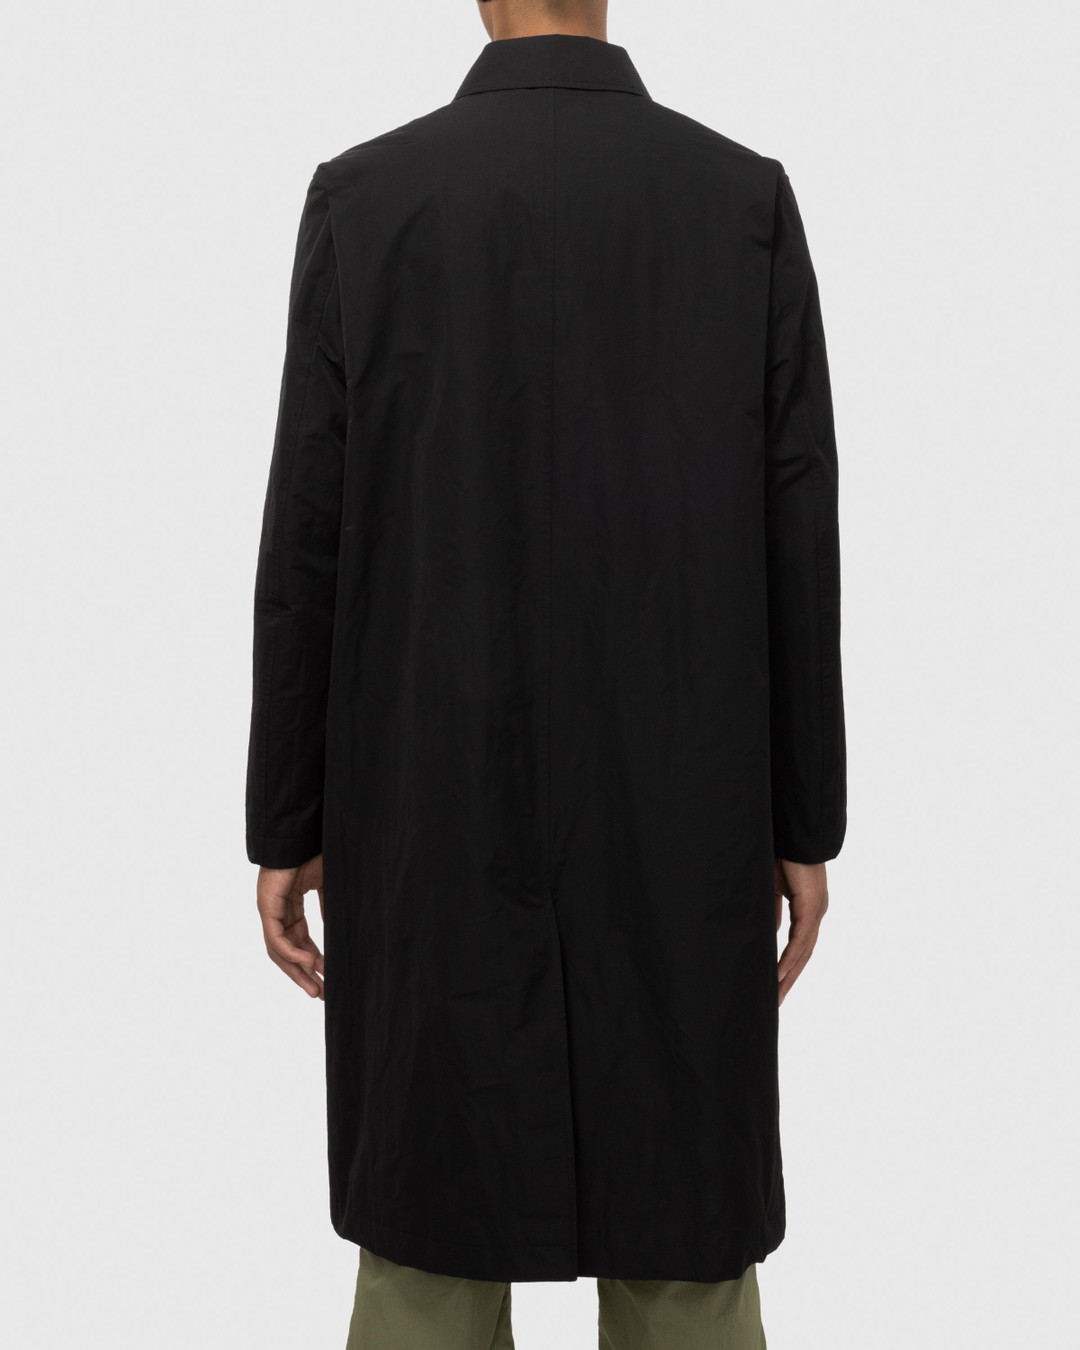 Dries van Noten – Rankle Coat Black - Trench Coats - Black - Image 3